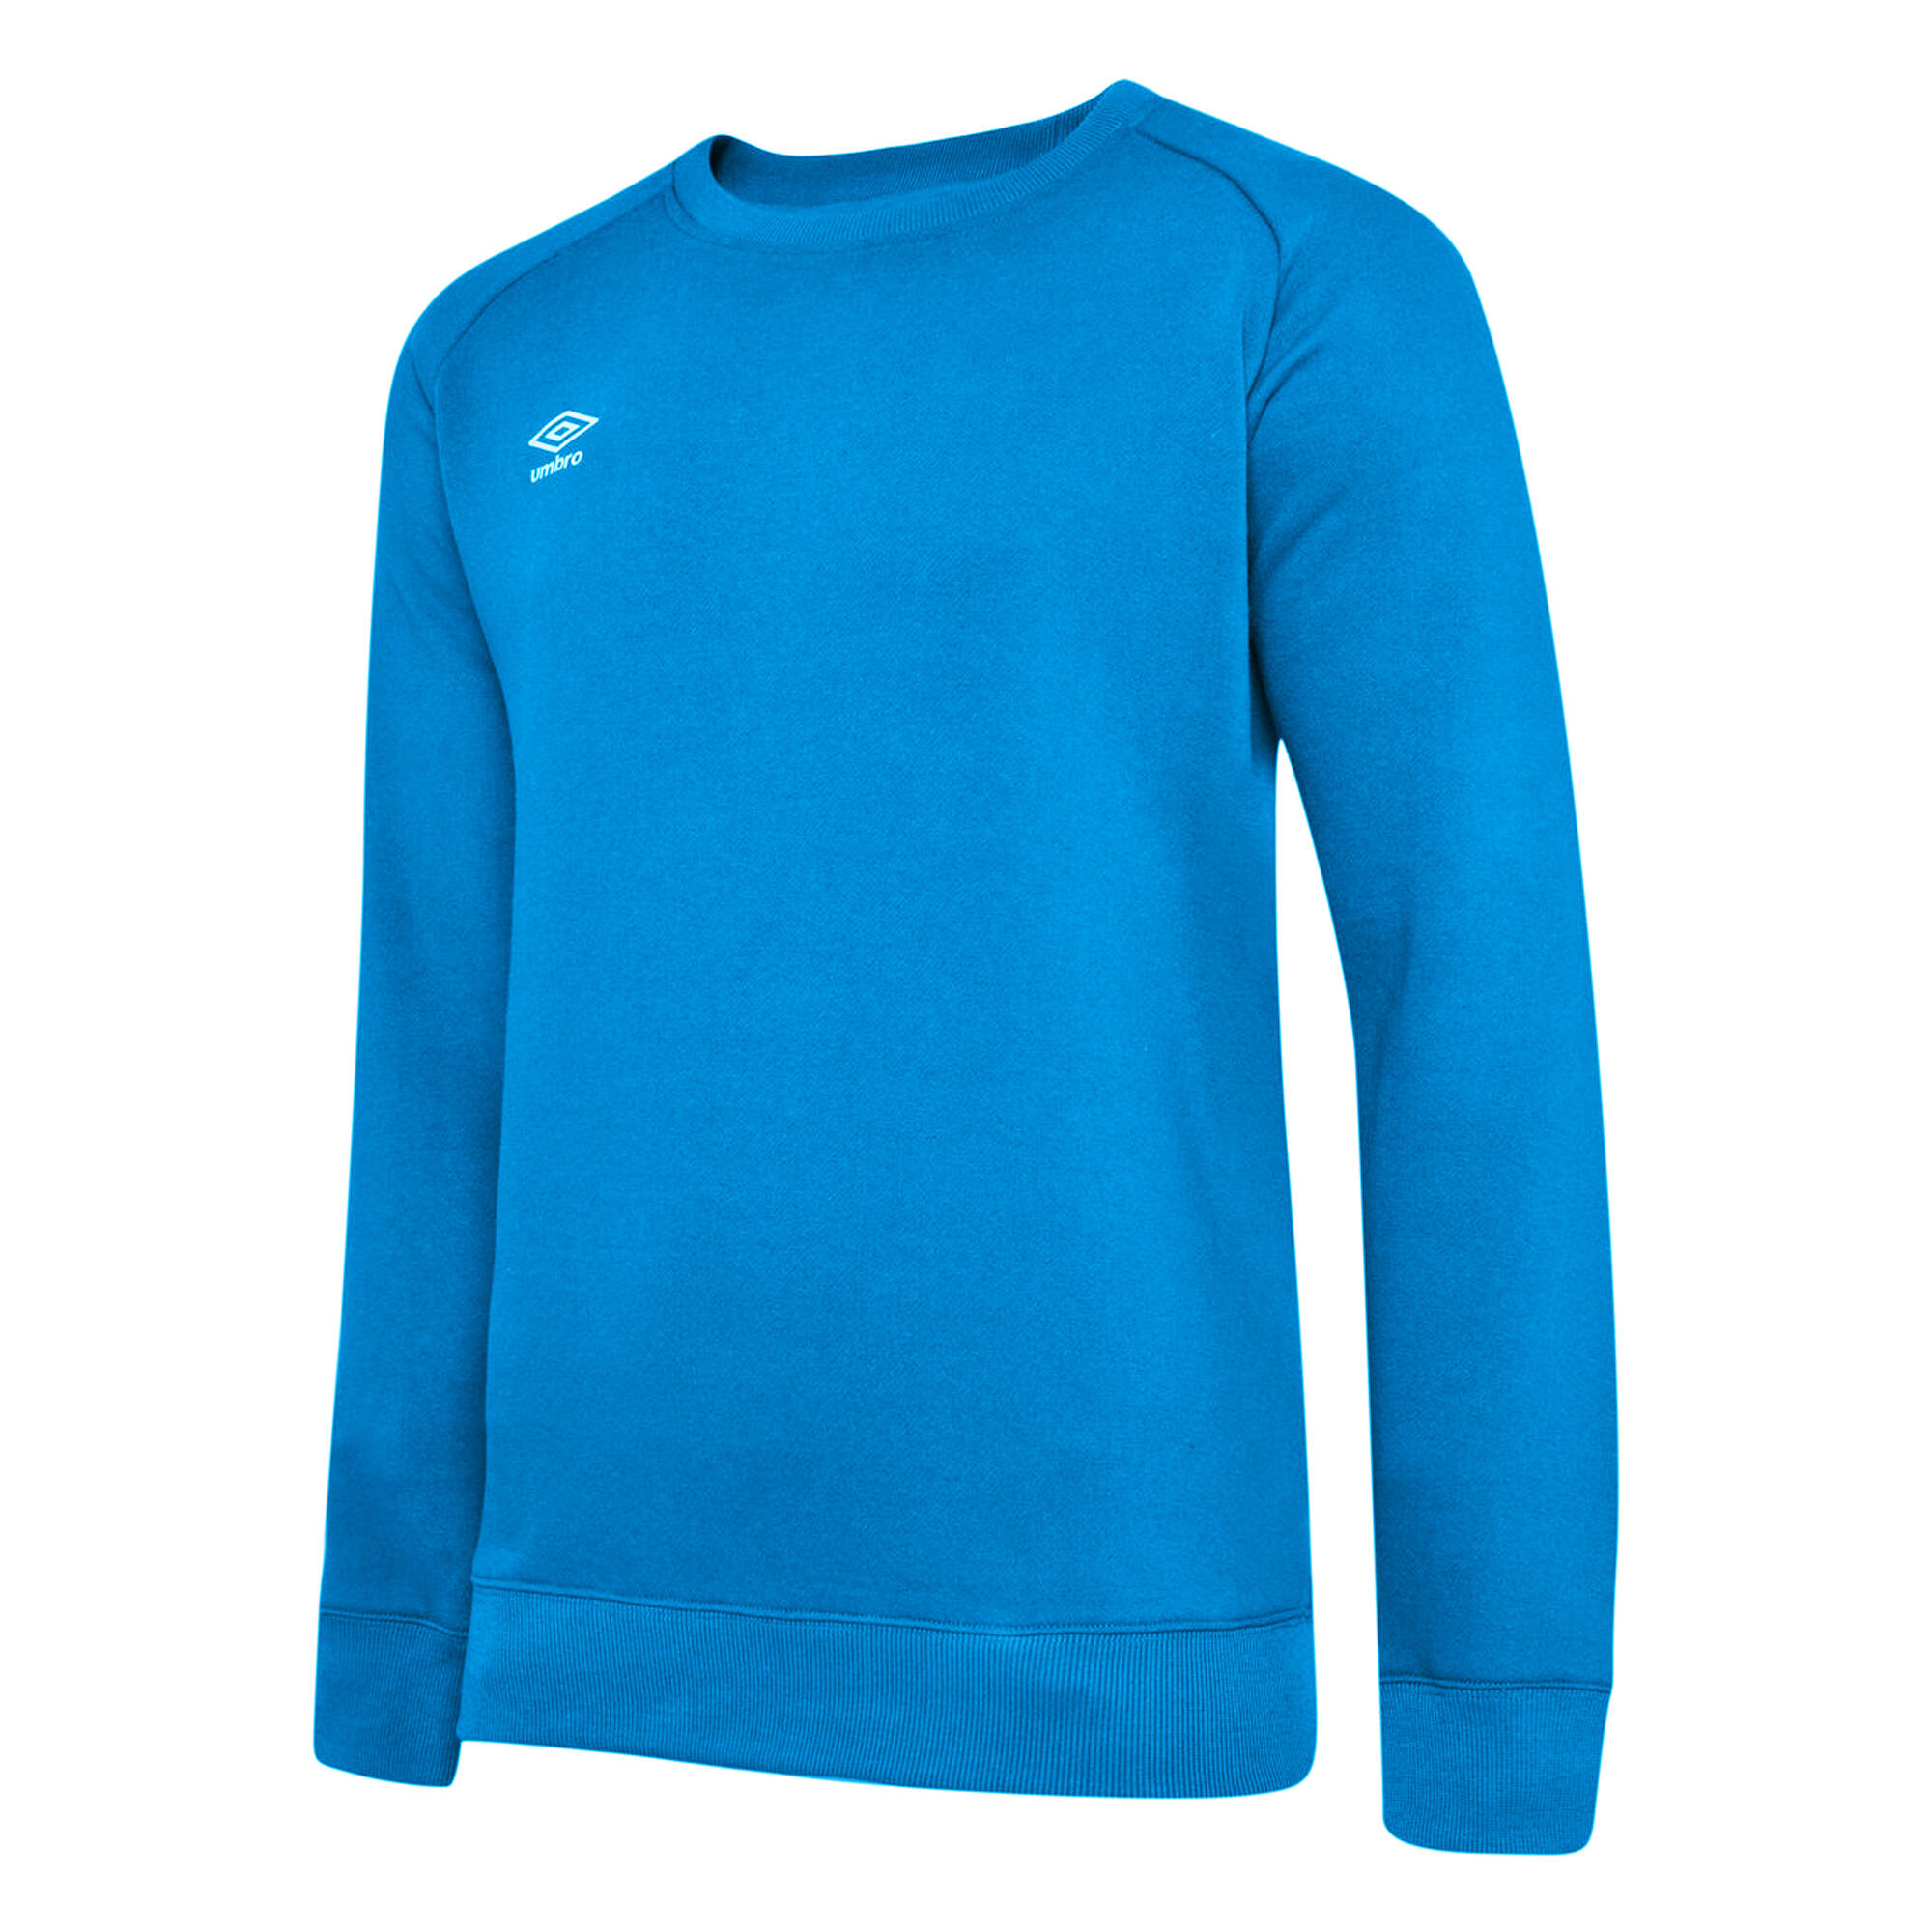 UMBRO Mens Club Leisure Sweatshirt (Royal Blue/White)